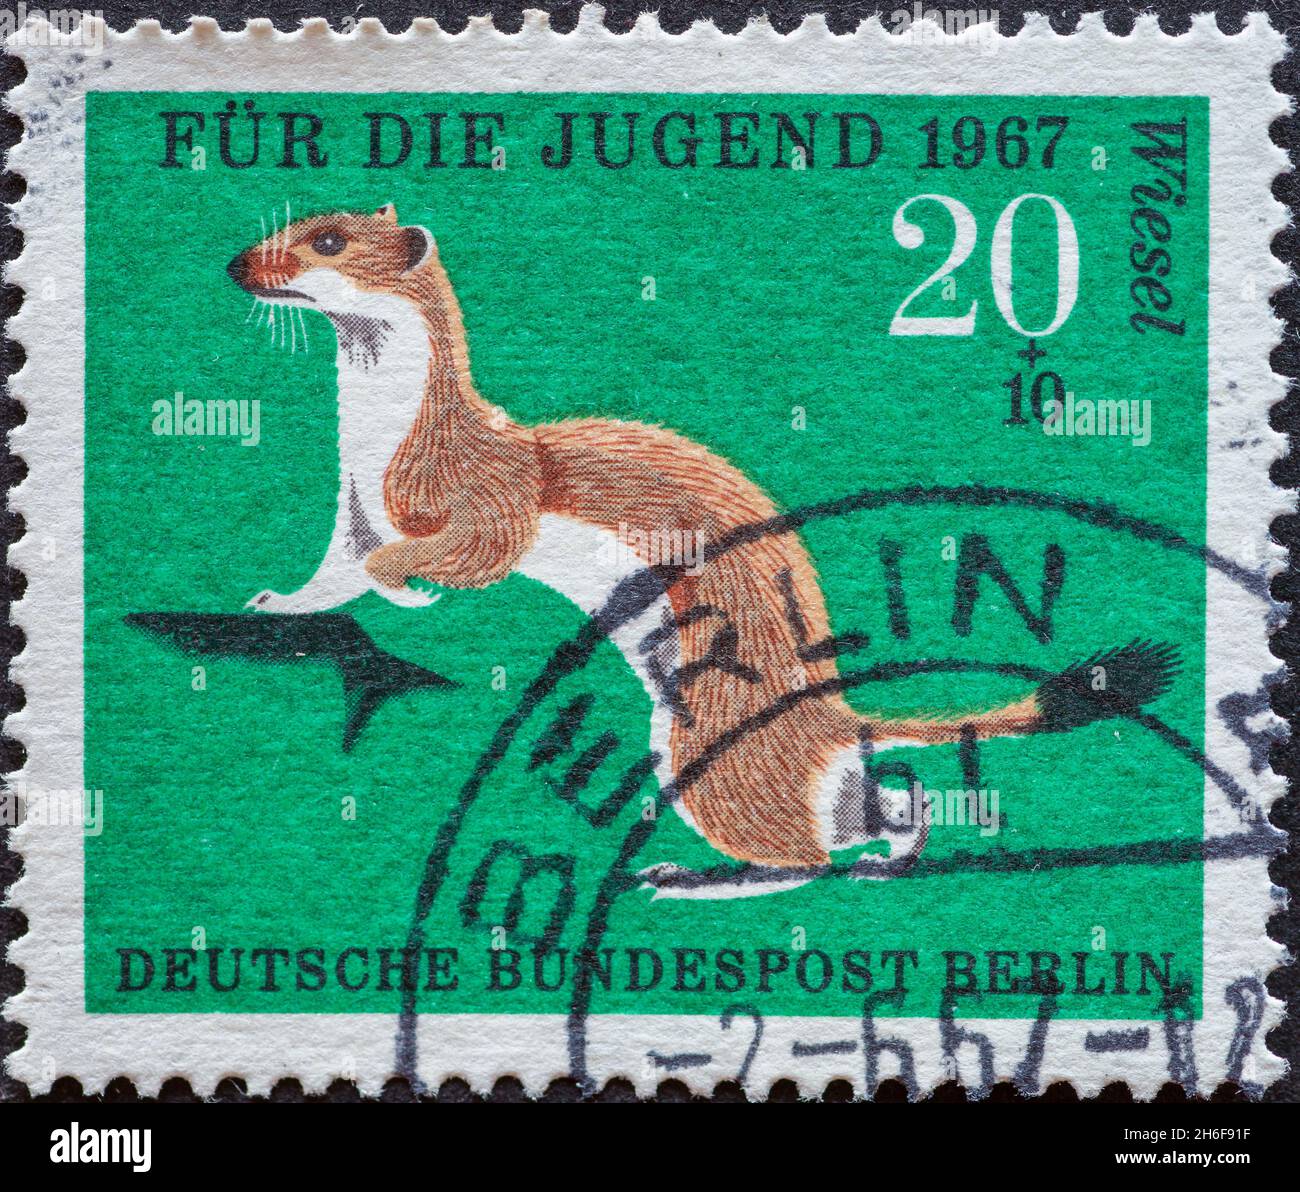 ALLEMAGNE, Berlin - VERS 1967: Timbre-poste de l'Allemagne, Berlin montrant des animaux sauvages plus petits en Allemagne. weasel. Timbre-poste de charité pour les jeunes Banque D'Images